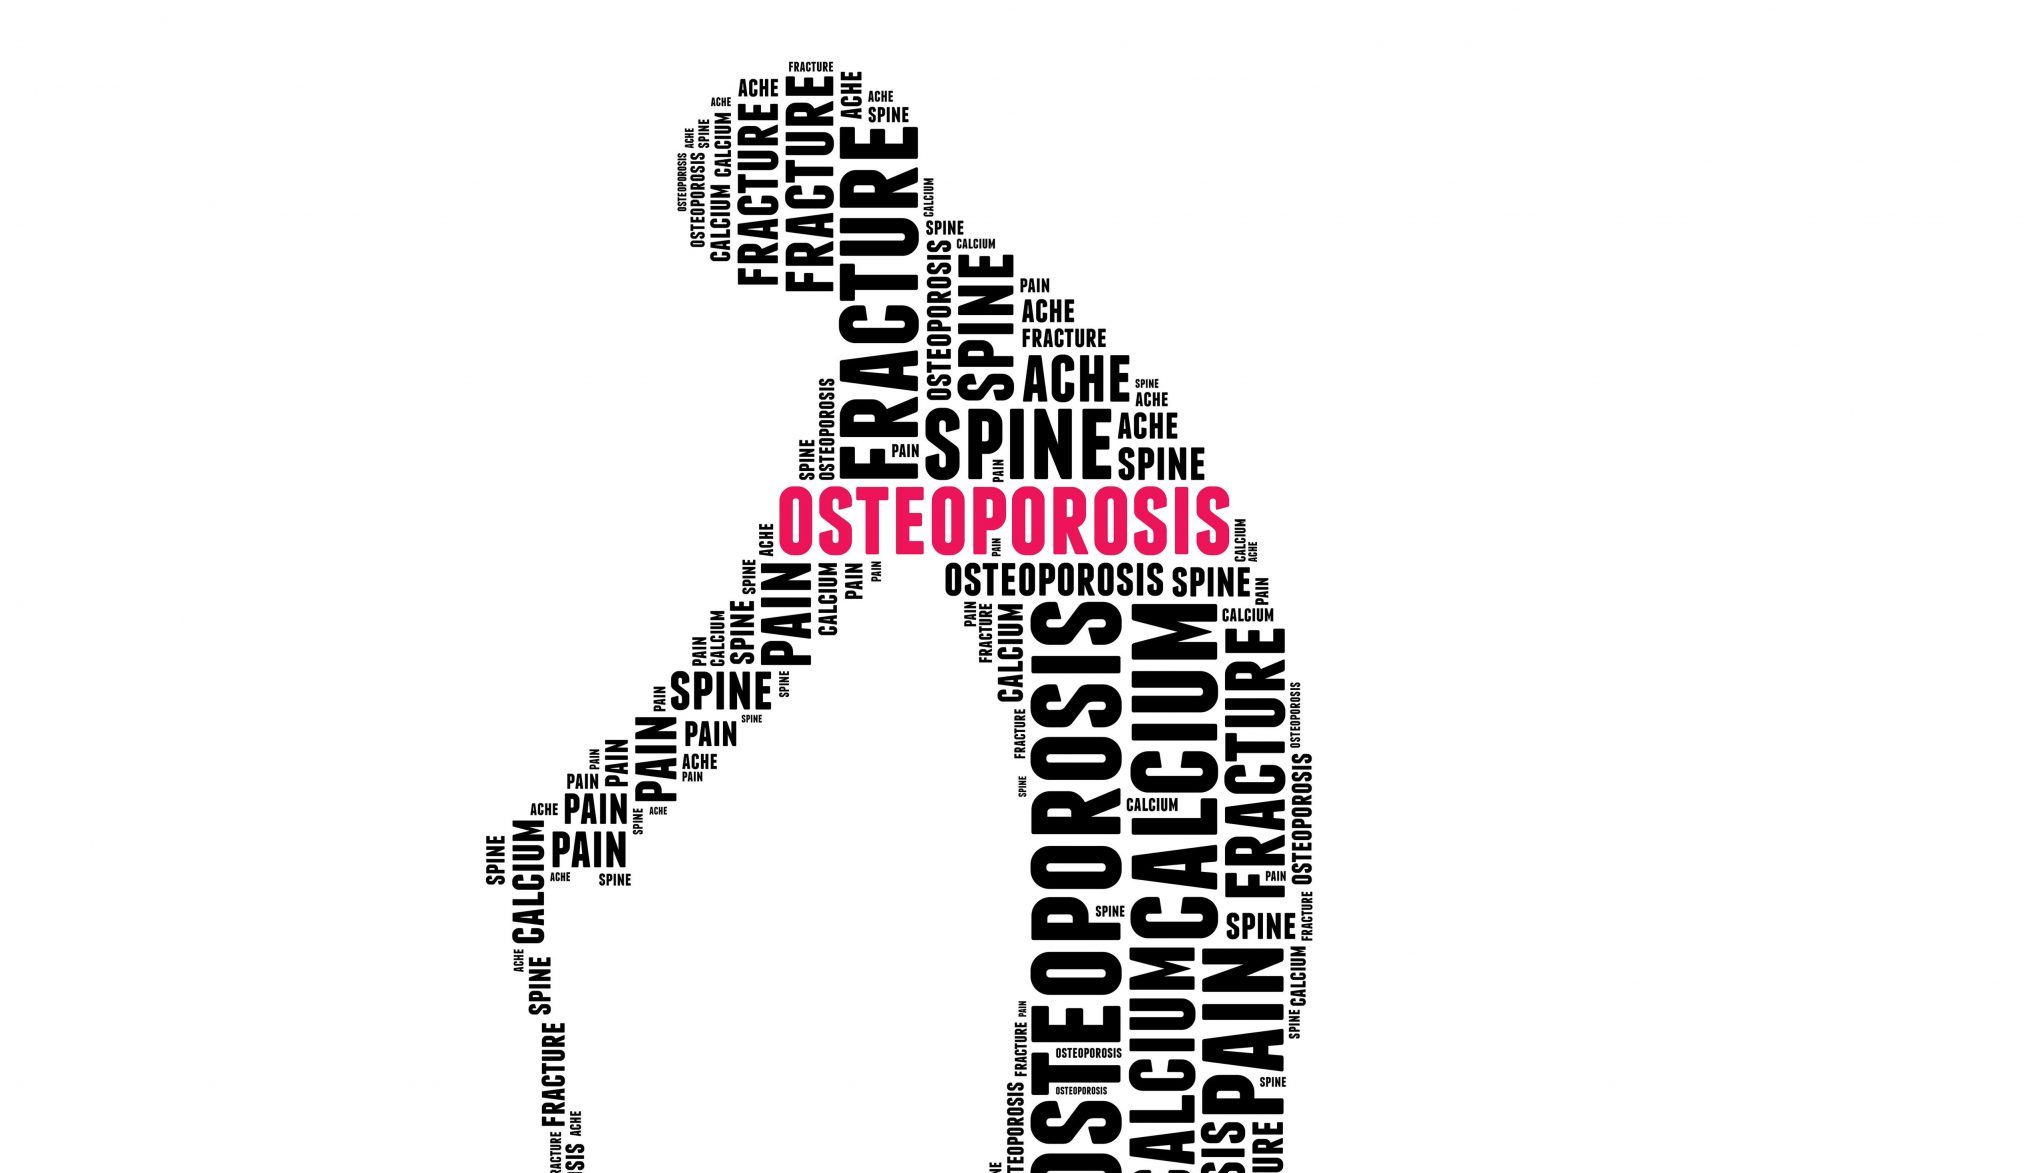 Recomendaciones de ejercicio físico y de nutrición con la palabra de osteoporosis